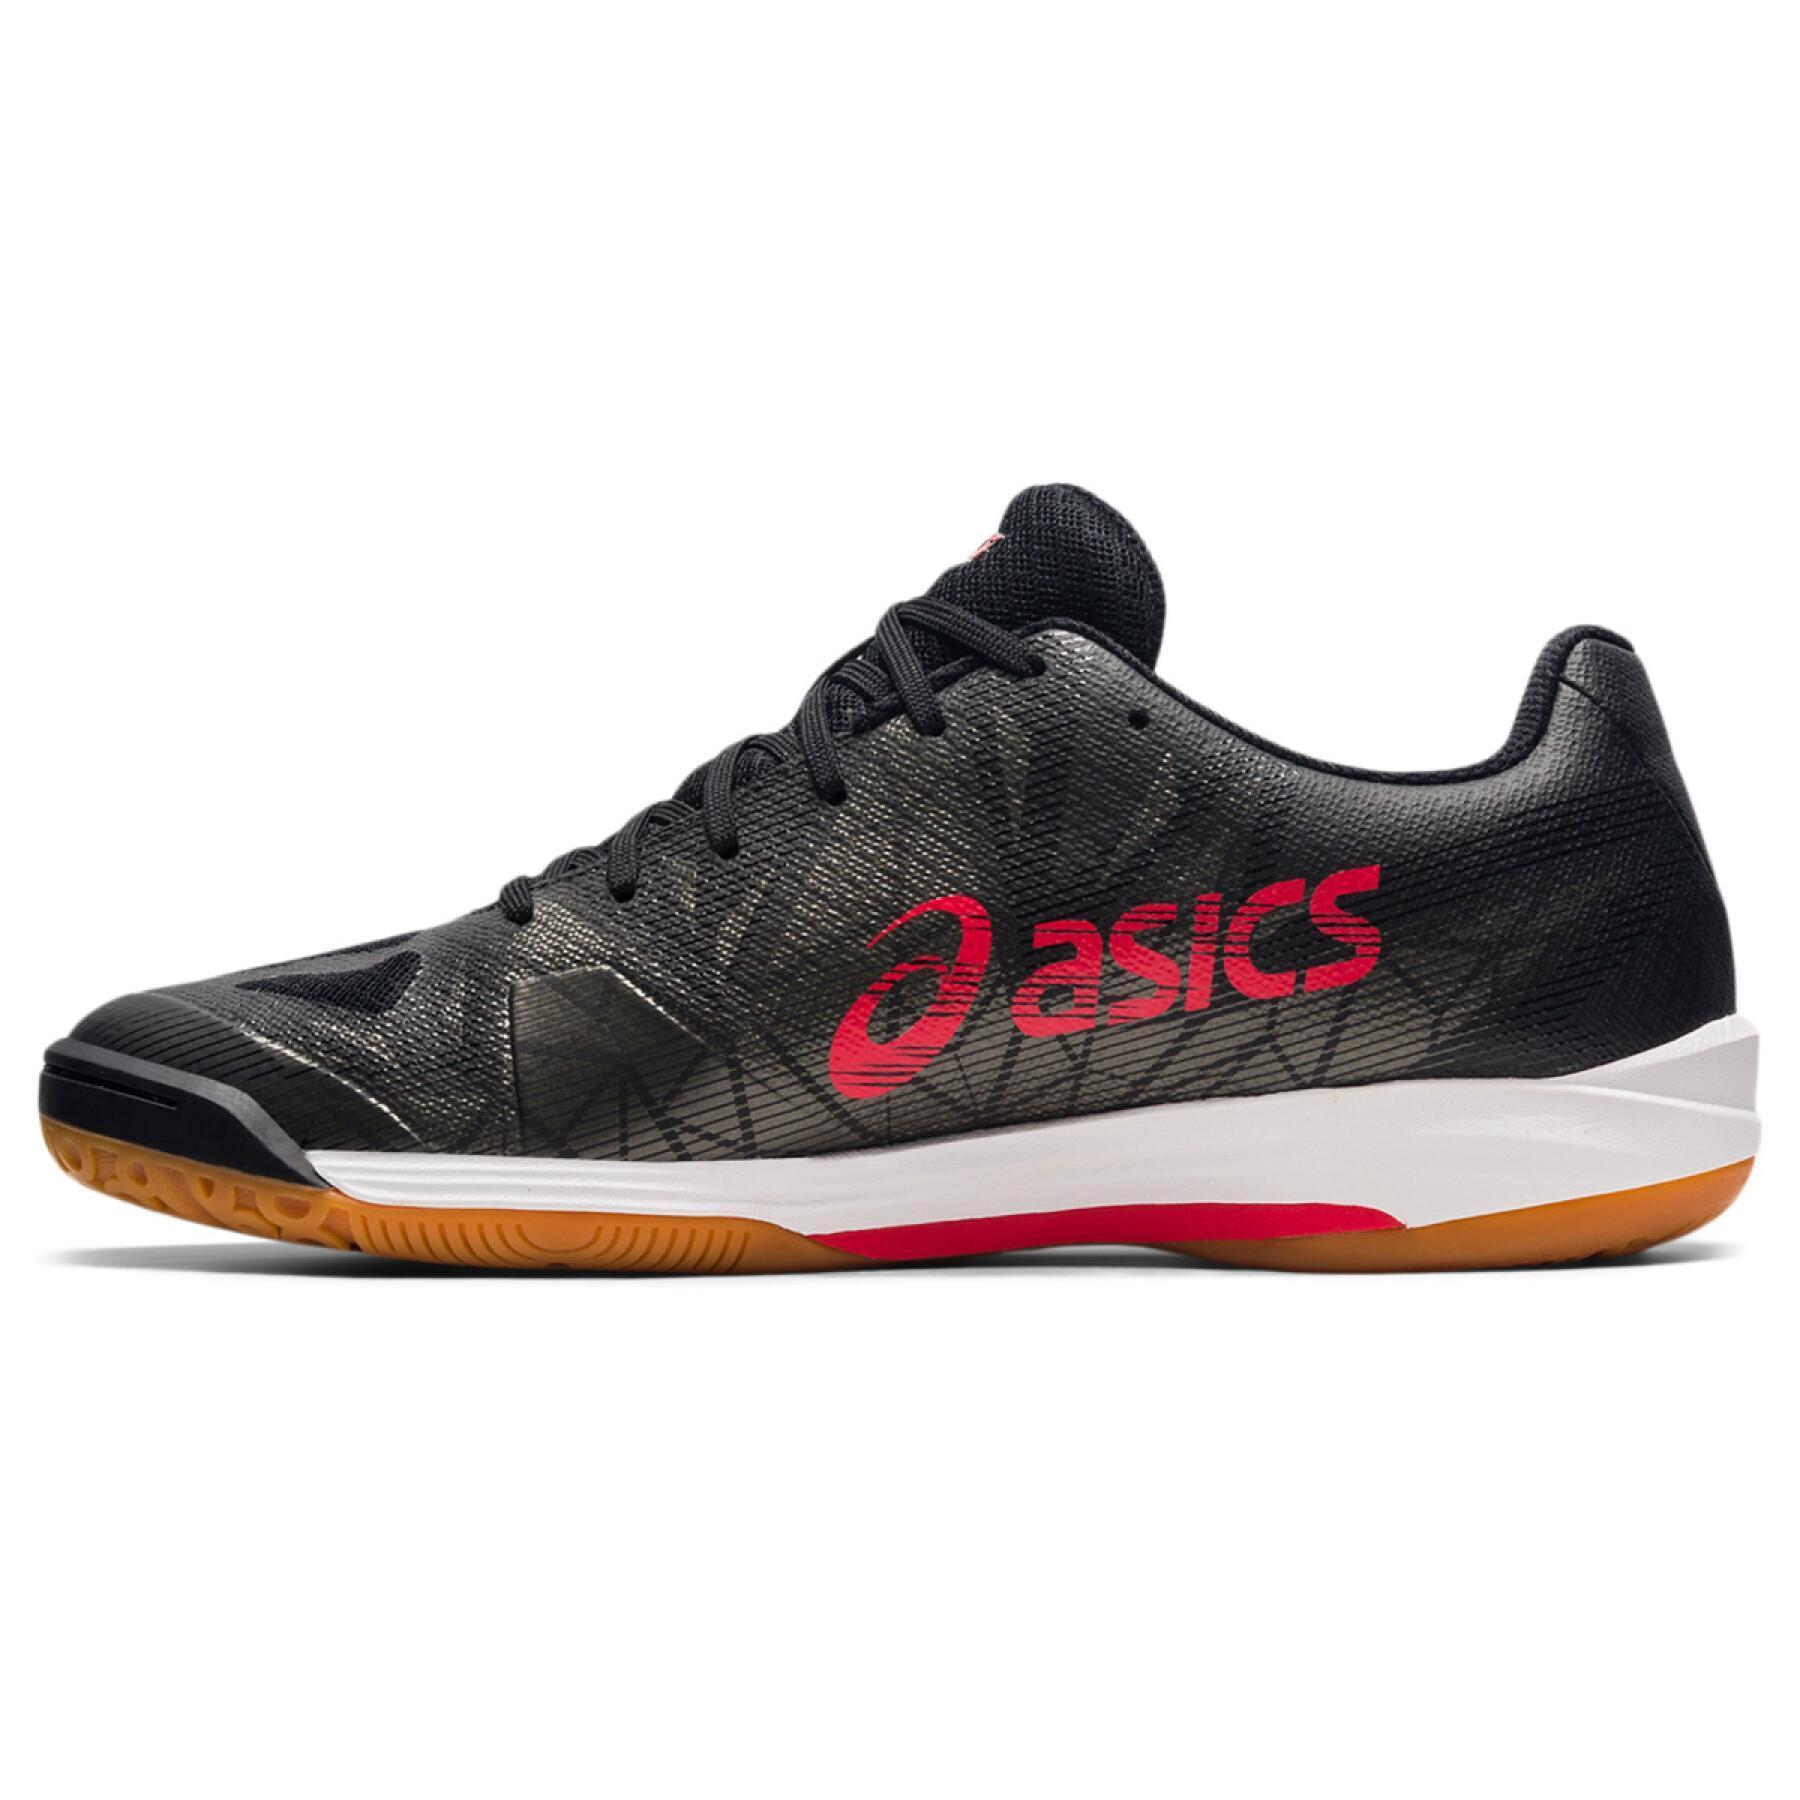 Schuhe Asics Gel-Fastball 3